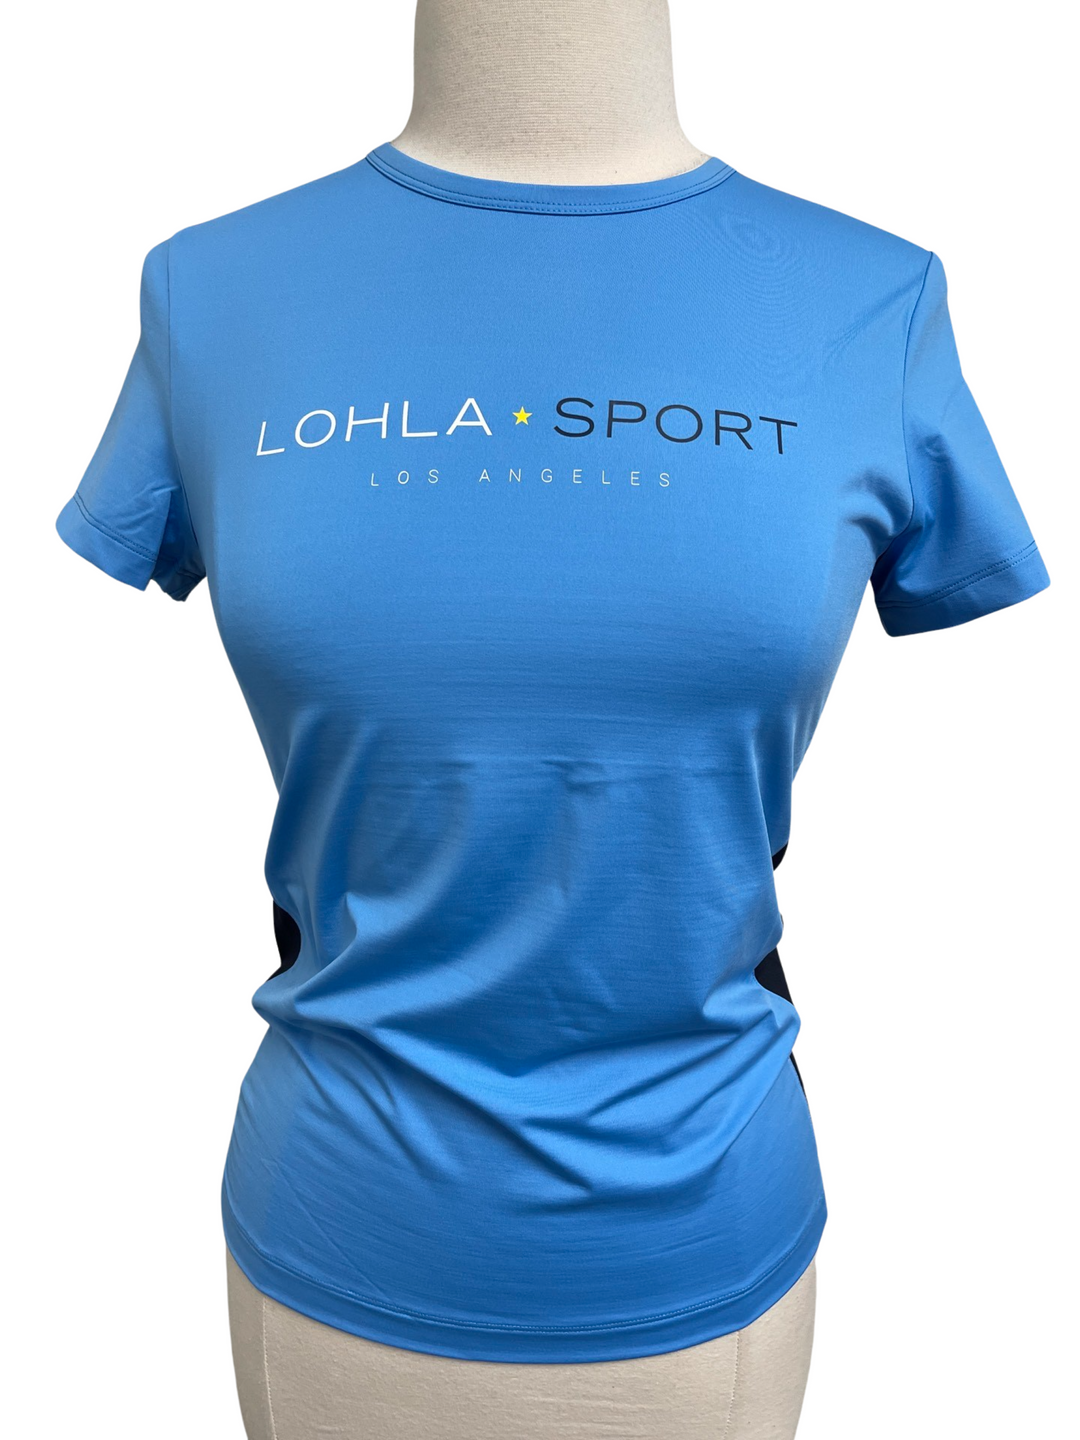 Lohla Sport The Lohla Tee - Azure - Size Small - Skorzie